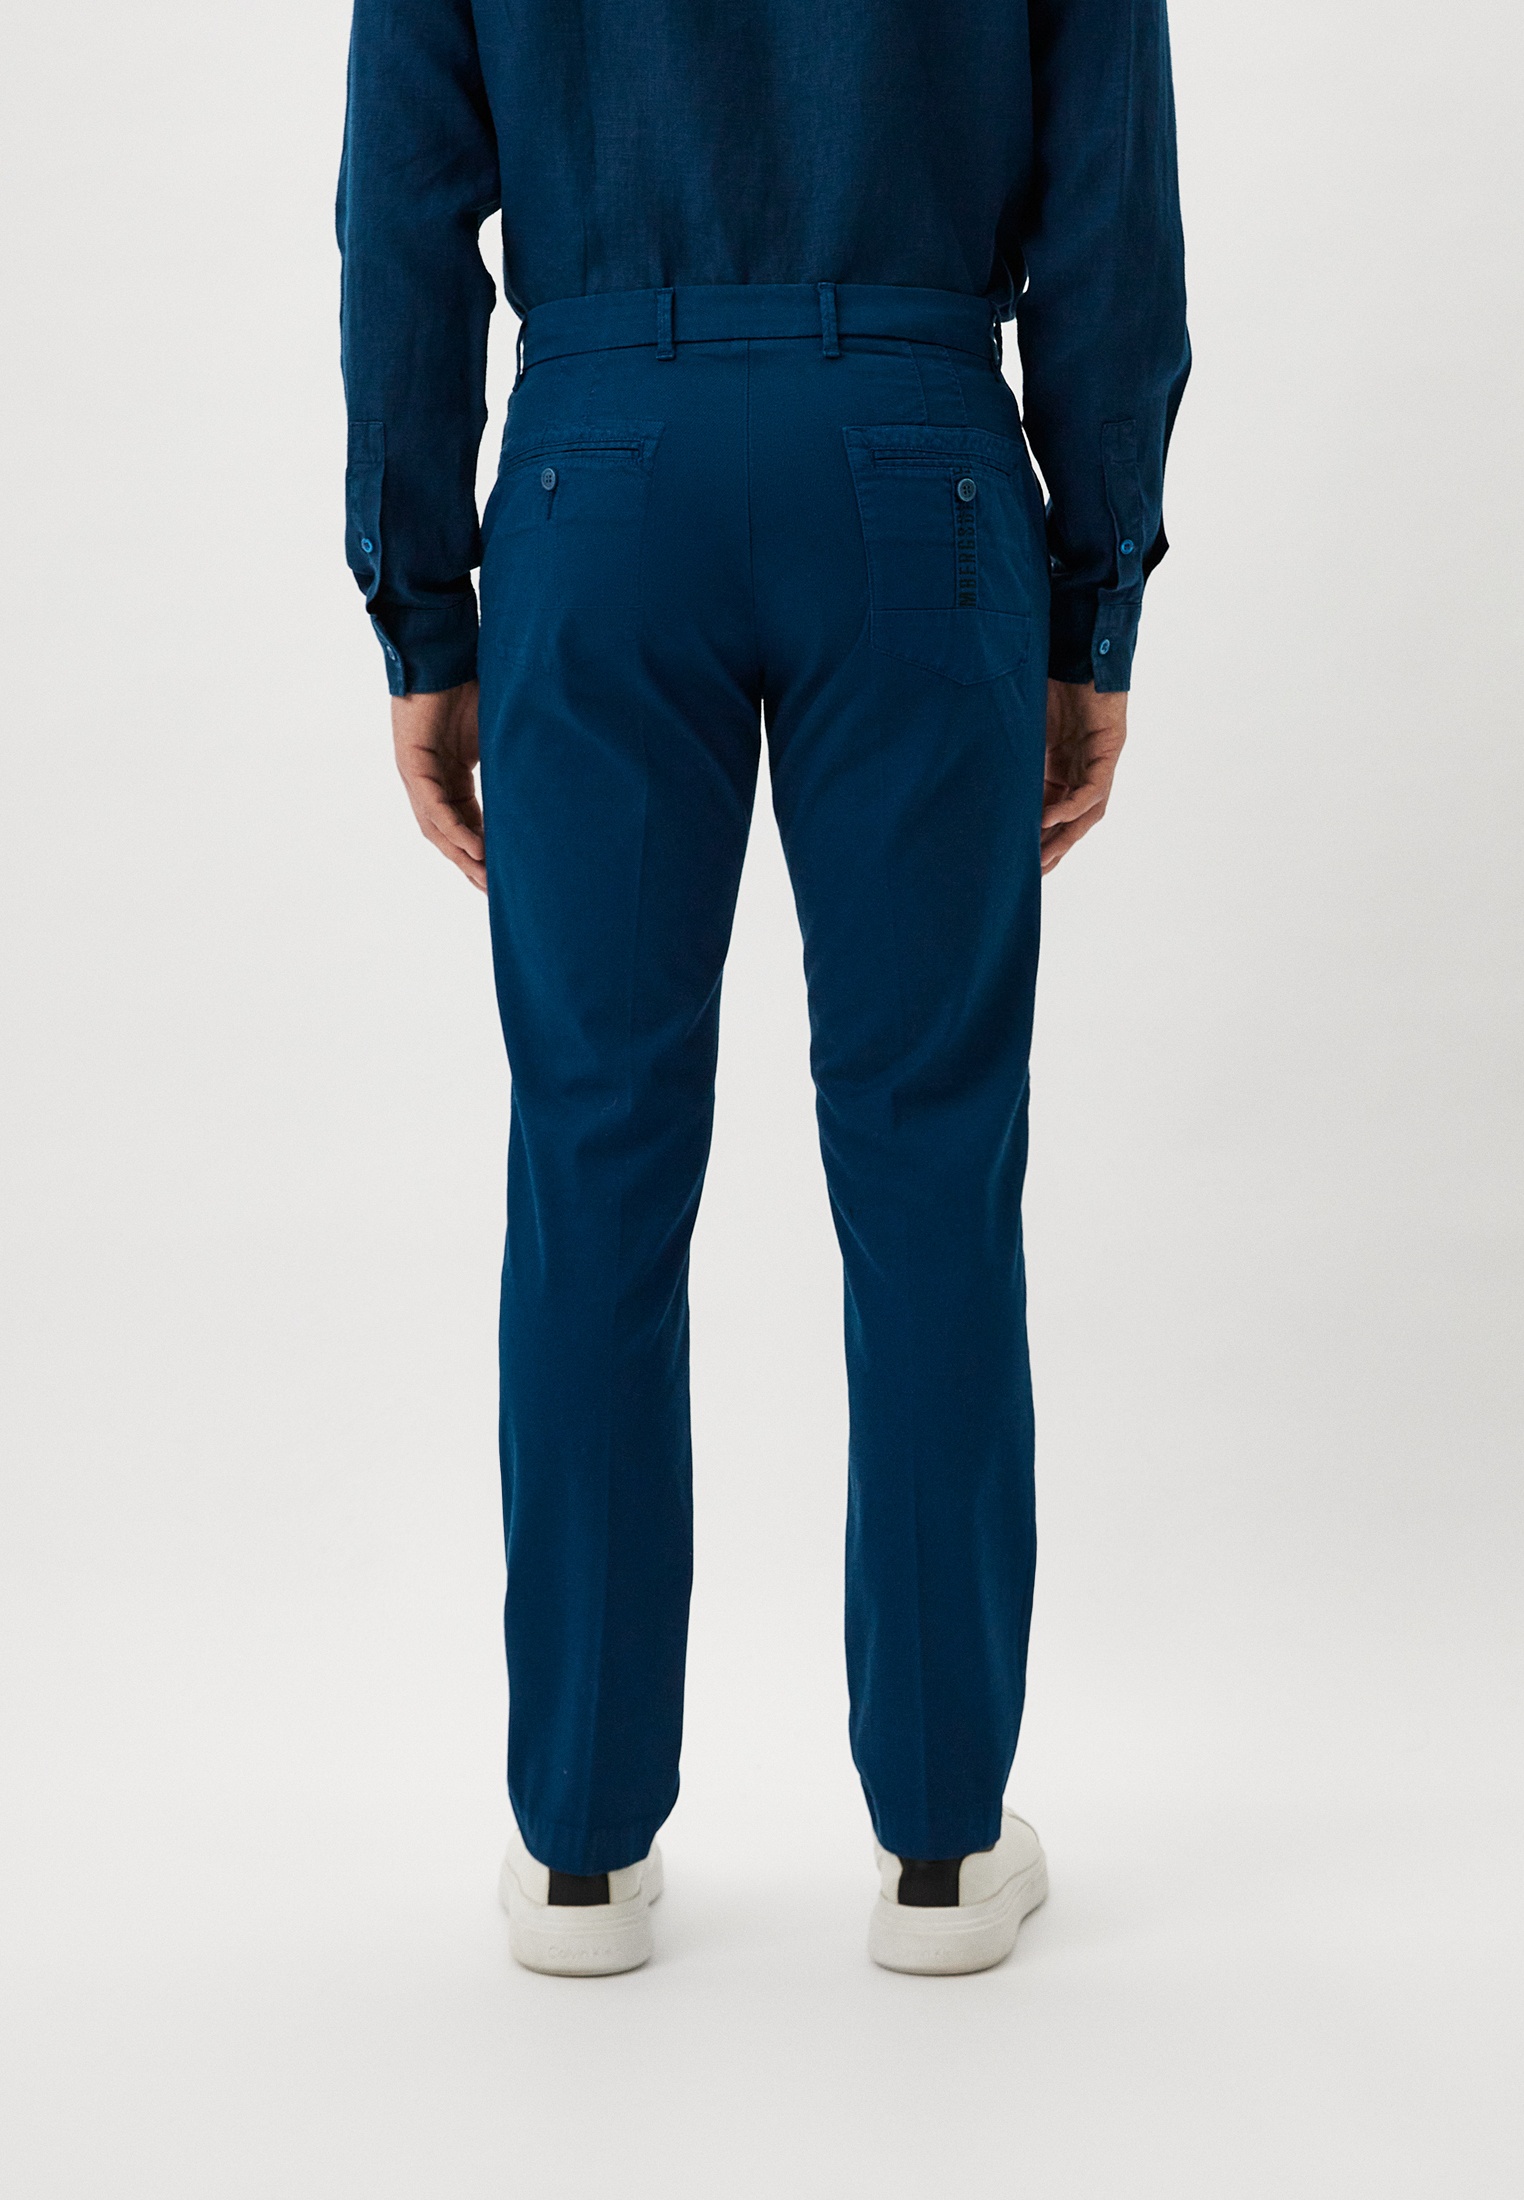 Мужские повседневные брюки Bikkembergs (Биккембергс) CP13580S3967: изображение 3